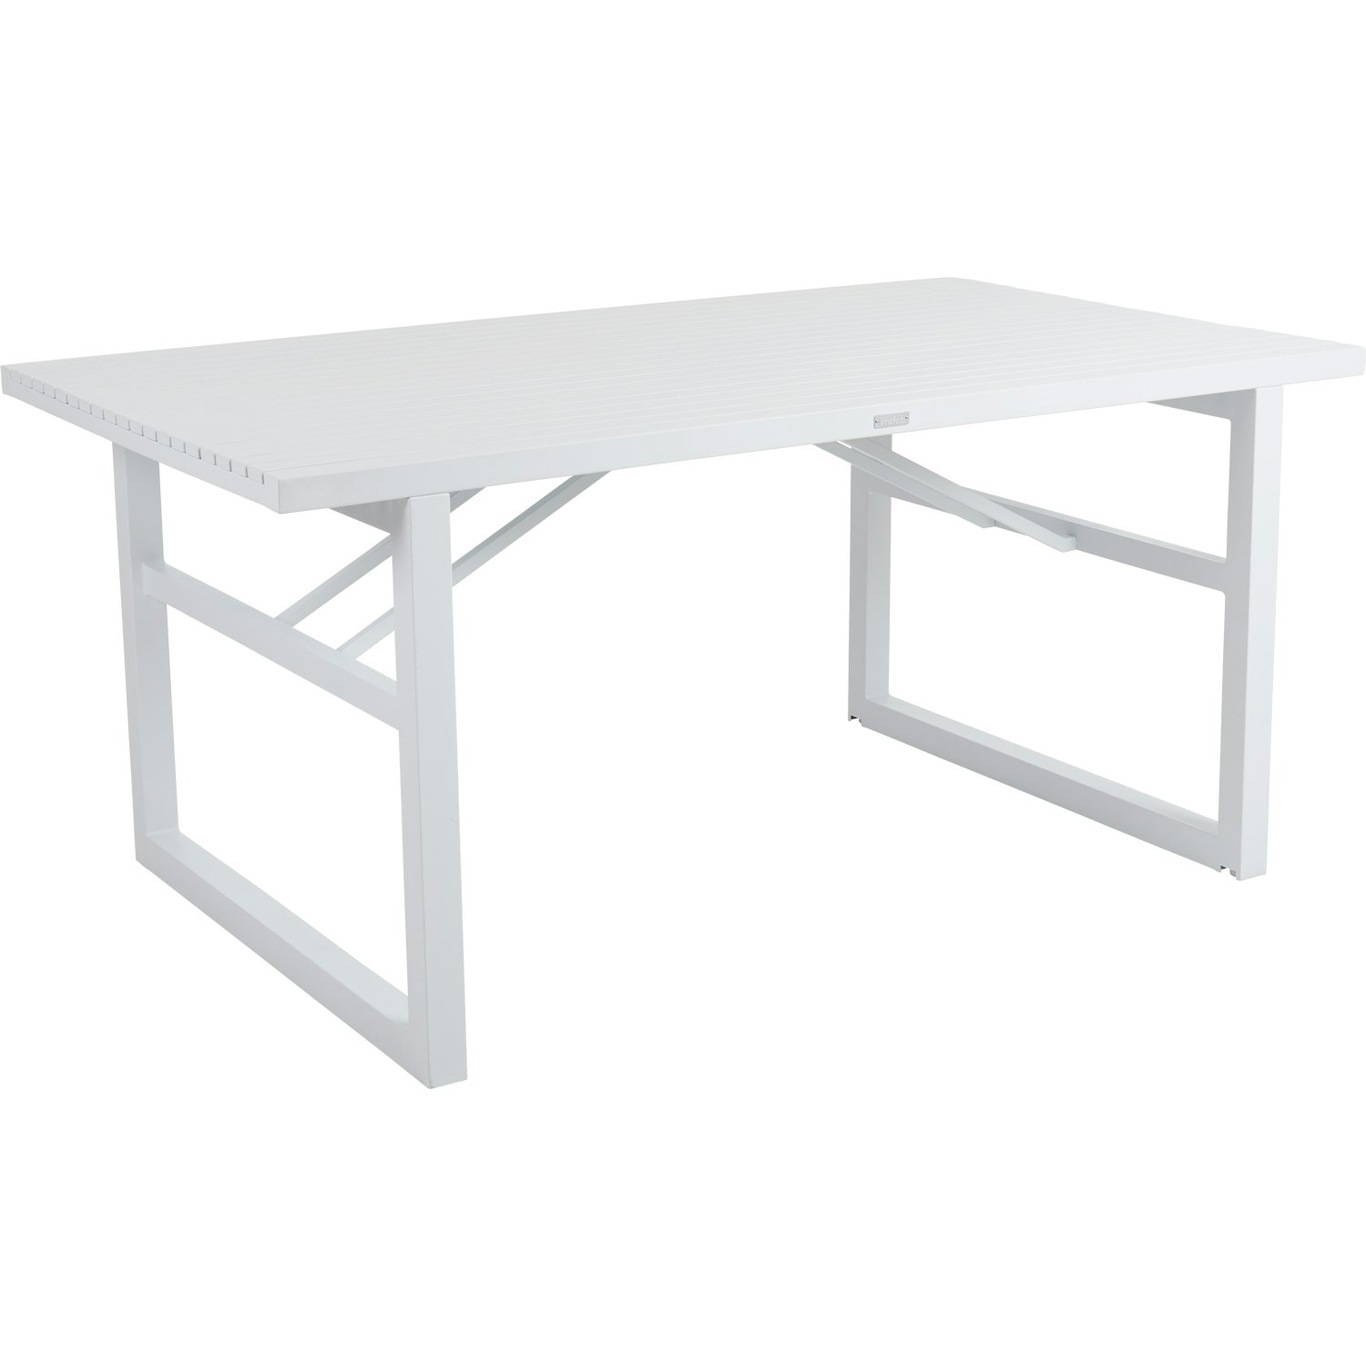 Vevi Ruokapöytä, Valkoinen 160x90 cm Alumiini, Valkoinen